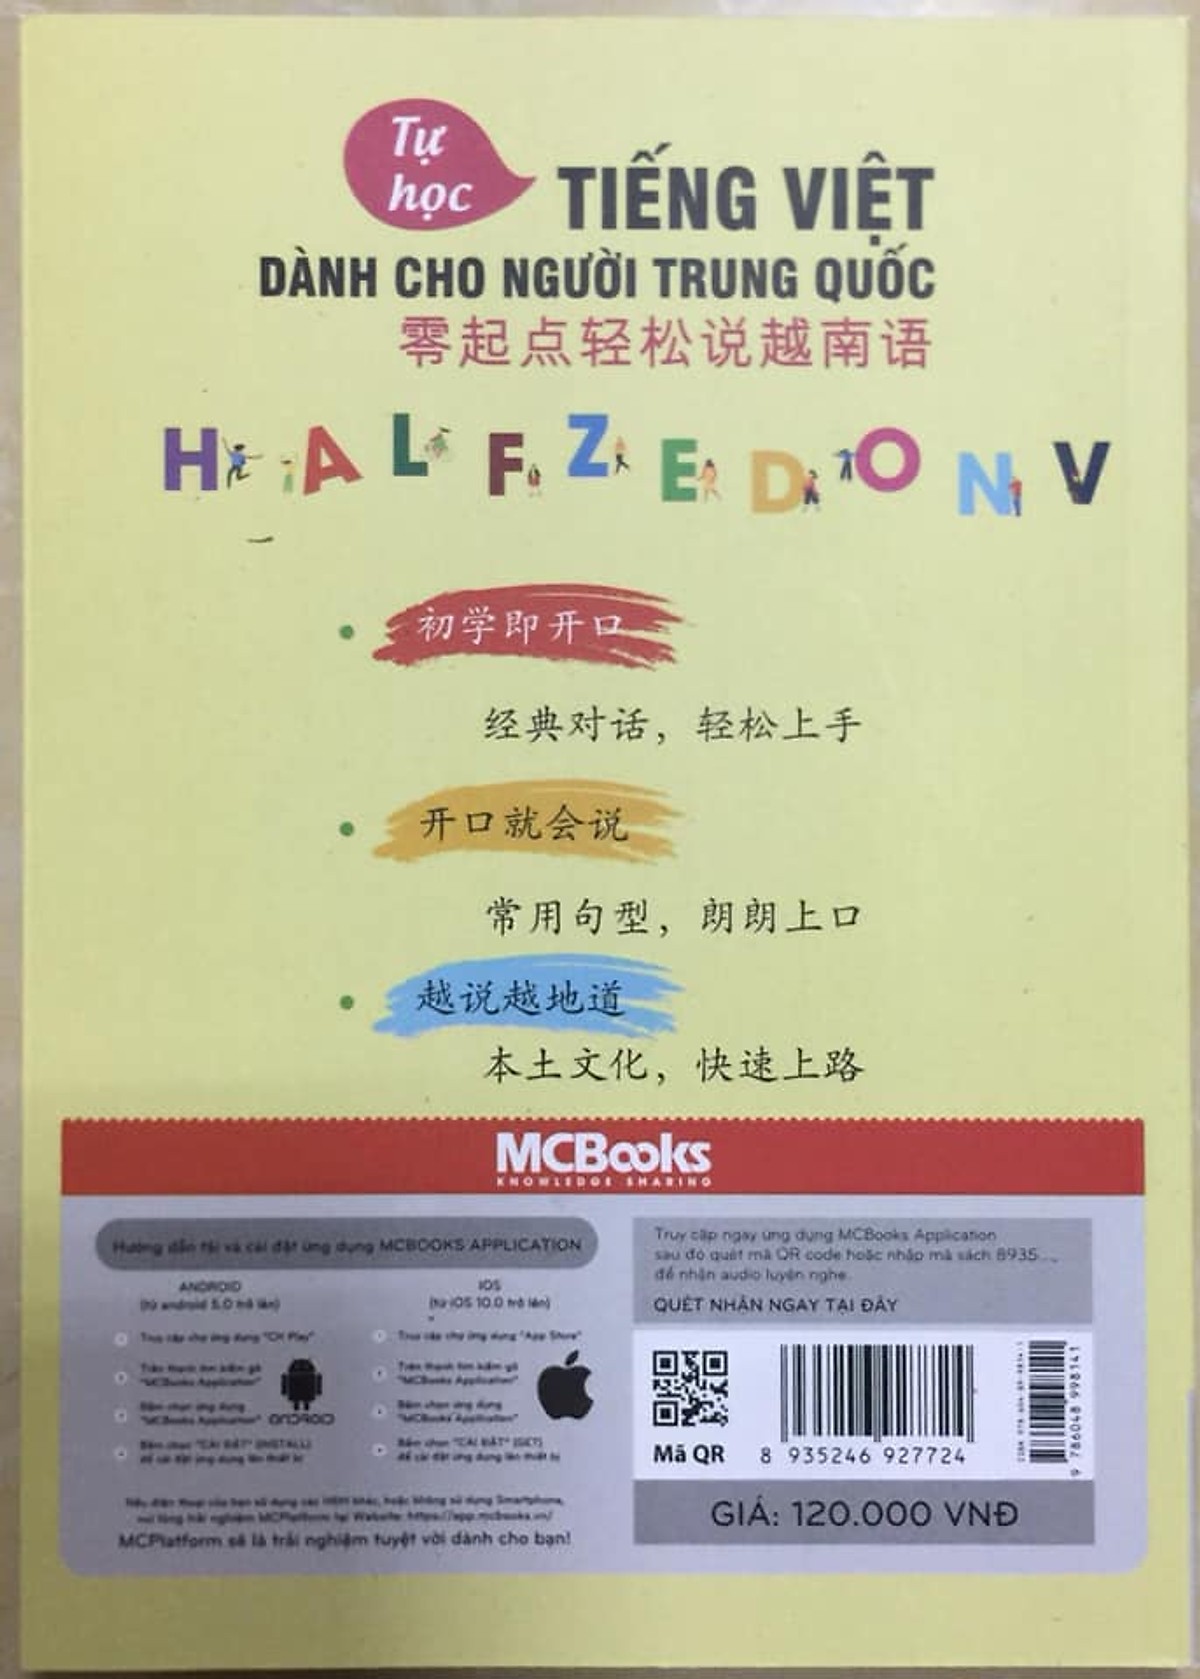 Tự học tiếng Việt dành cho người Trung Quốc (2019) ( TẶNG Kèm Bookmark Cổ Phong LH )